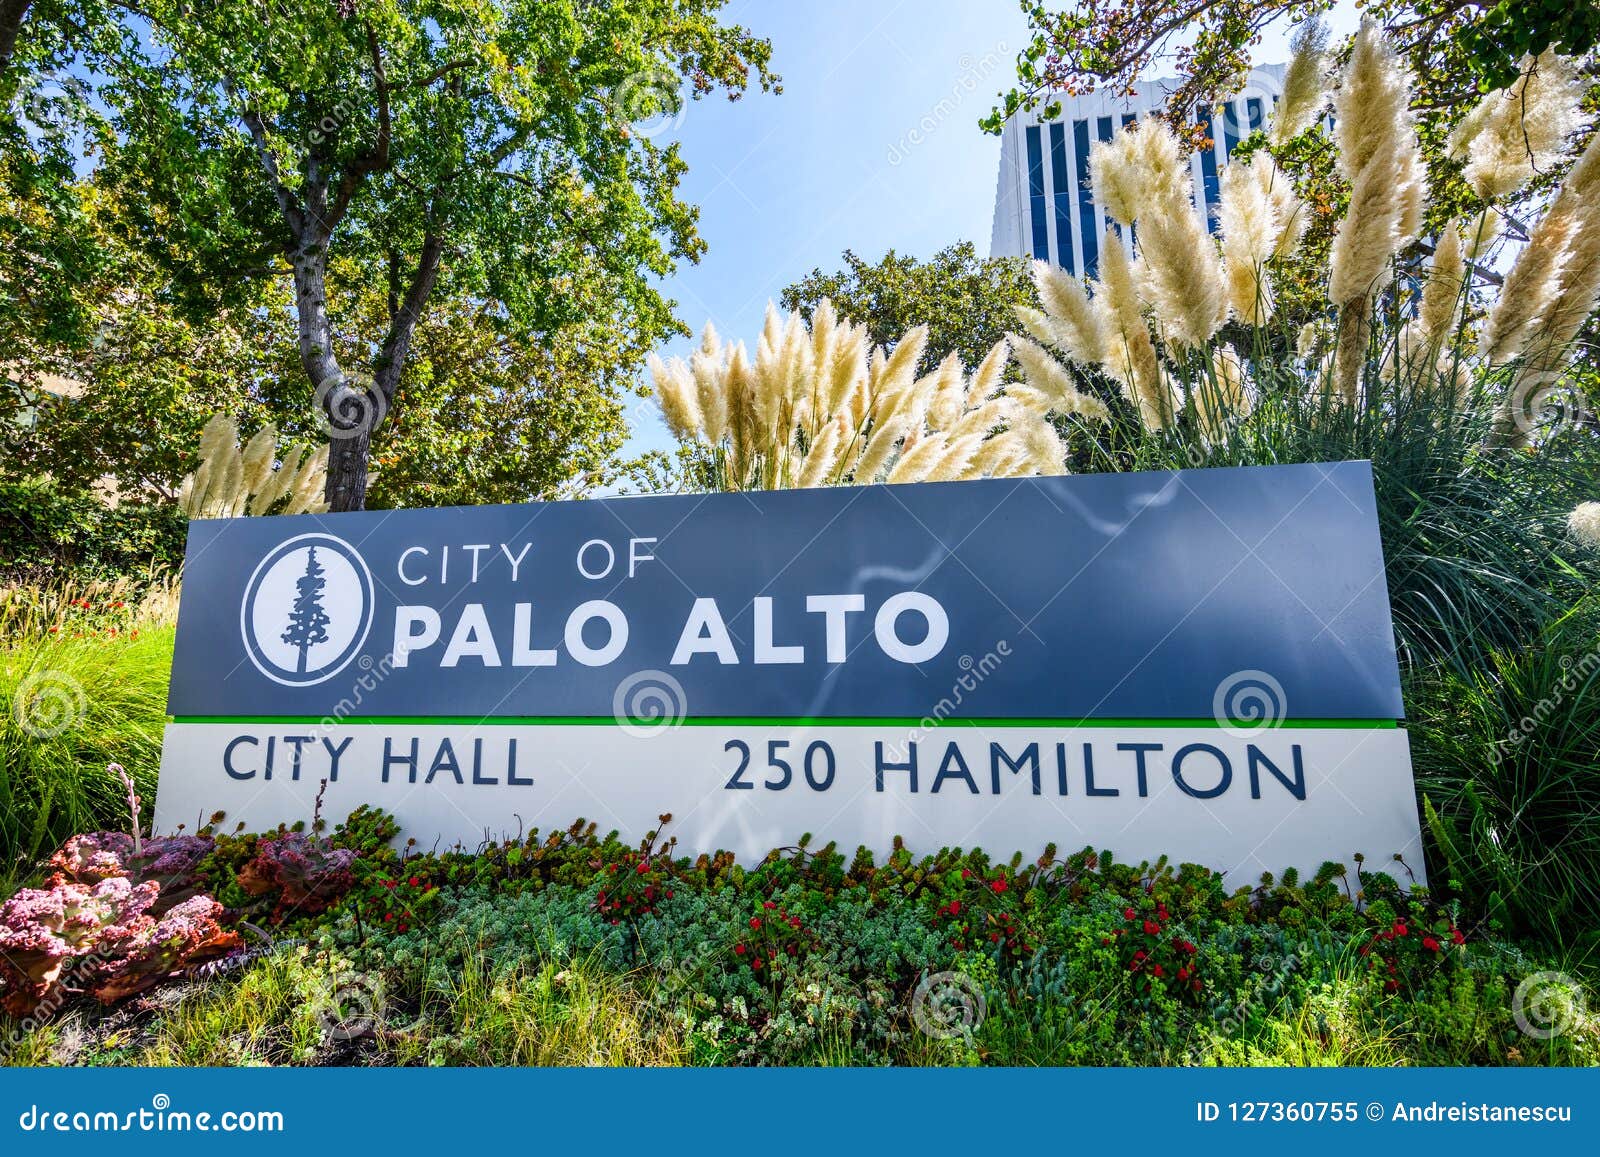 Табличка пала. Palo Alto City. Пало-Альто город в США. Города вокруг Пало Альто. City logo Palo Alto California.